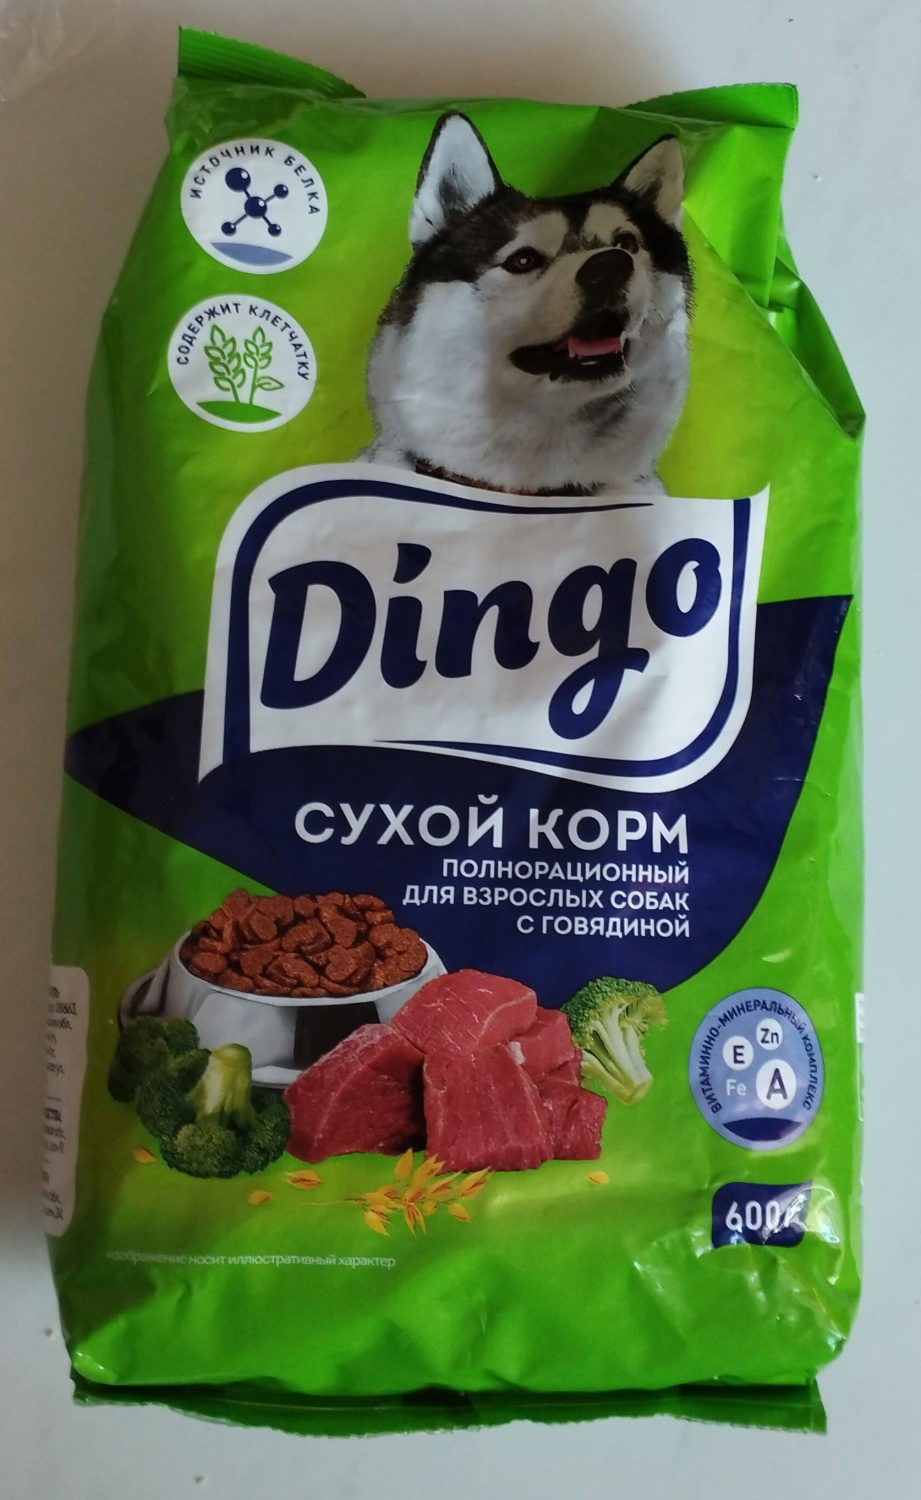 Корм для собак кунак. Dingo корм для собак. Самый лучший корм для собак. Корм для собак в светофоре. Корм Dingo отзывы.